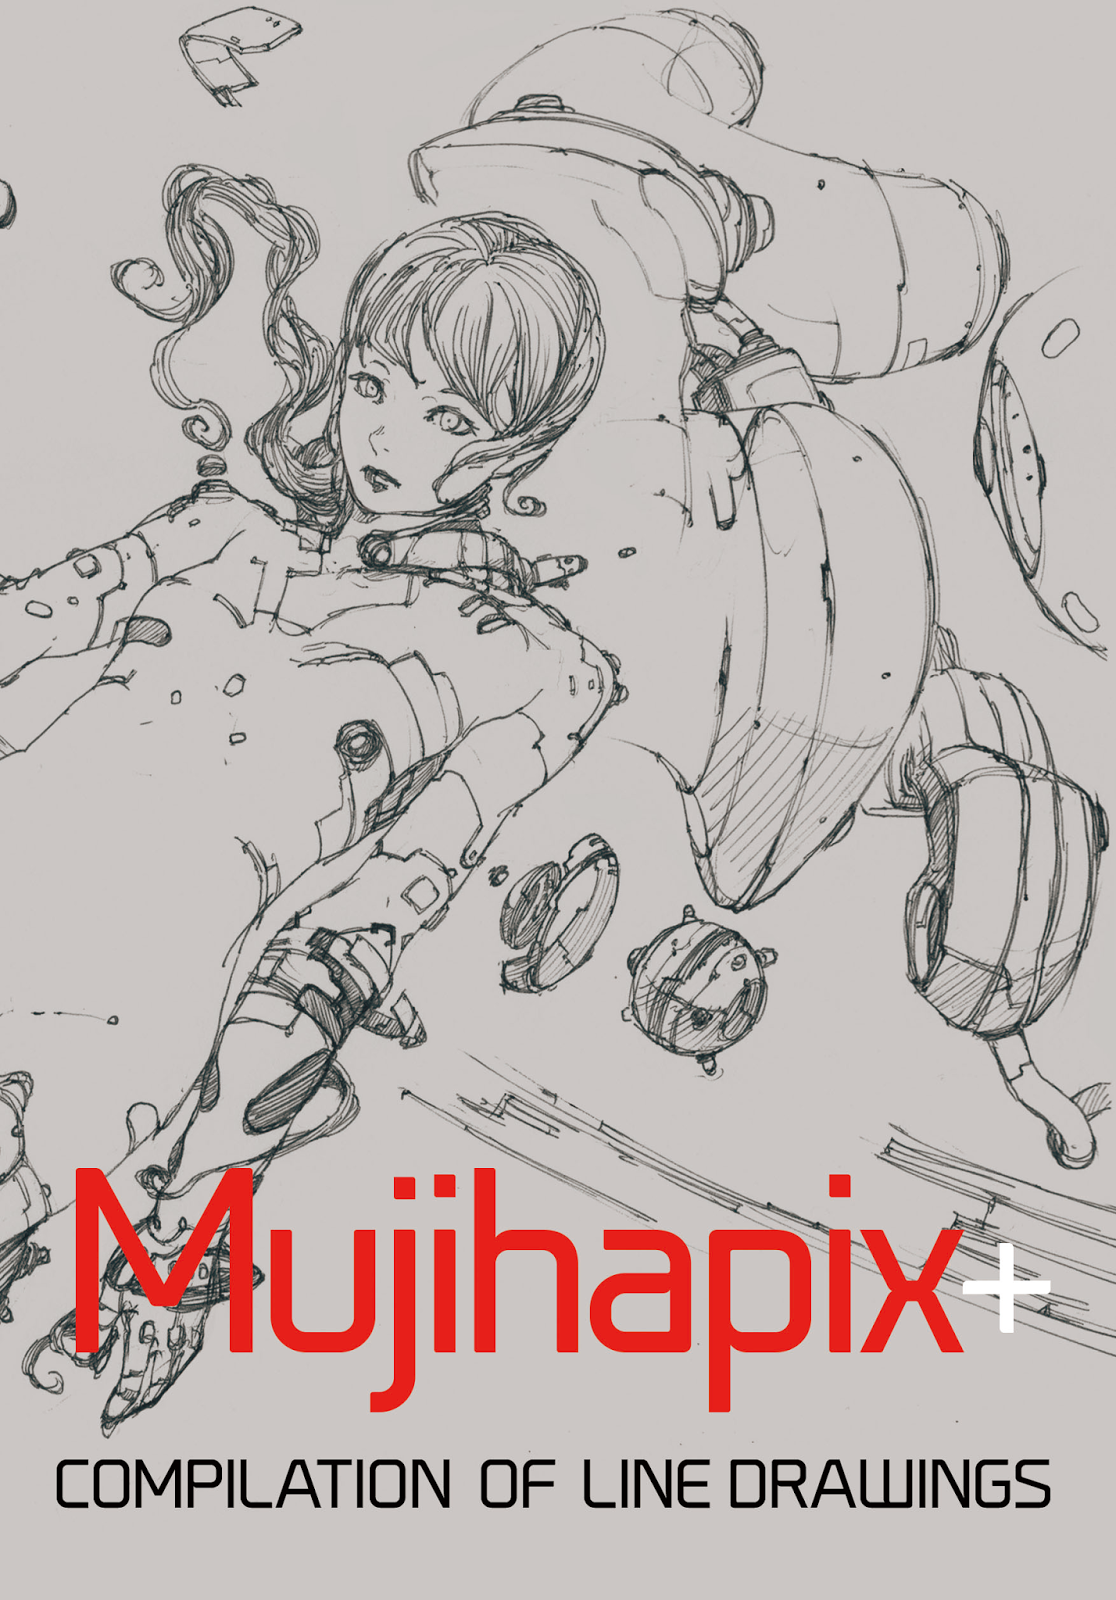 Mujihapix+